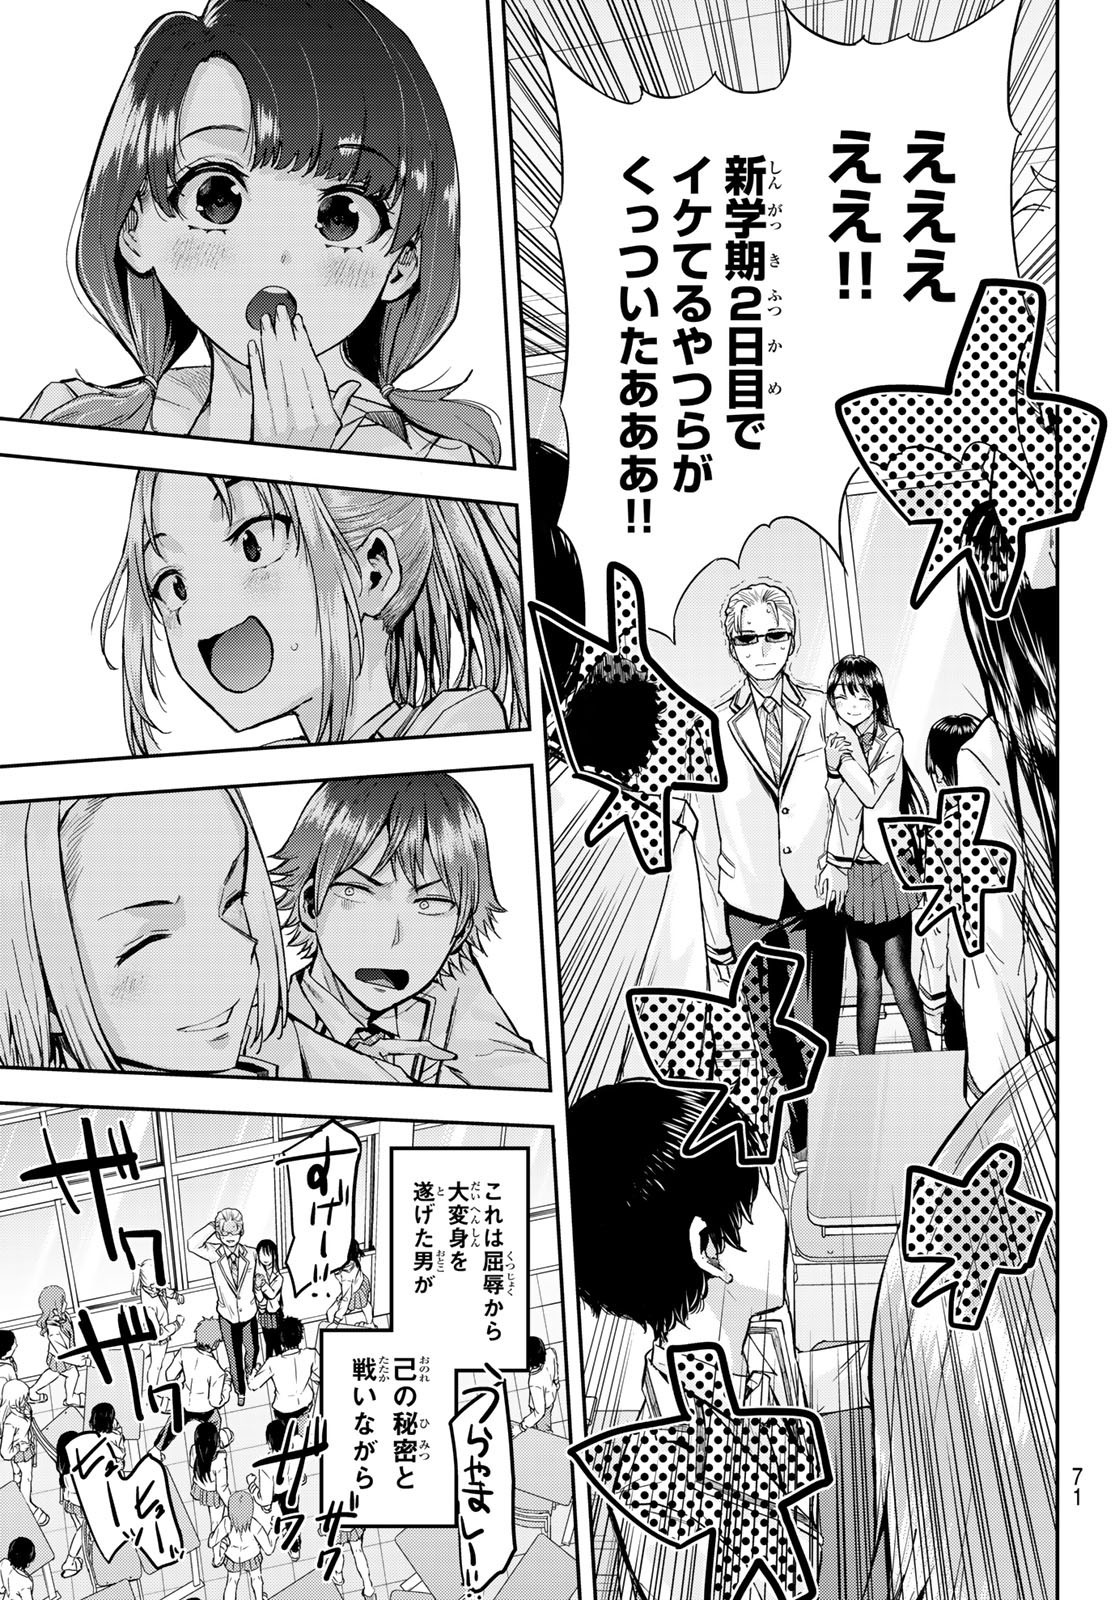 Kitazawa-kun wa A Class - Chapter 001 - Page 56